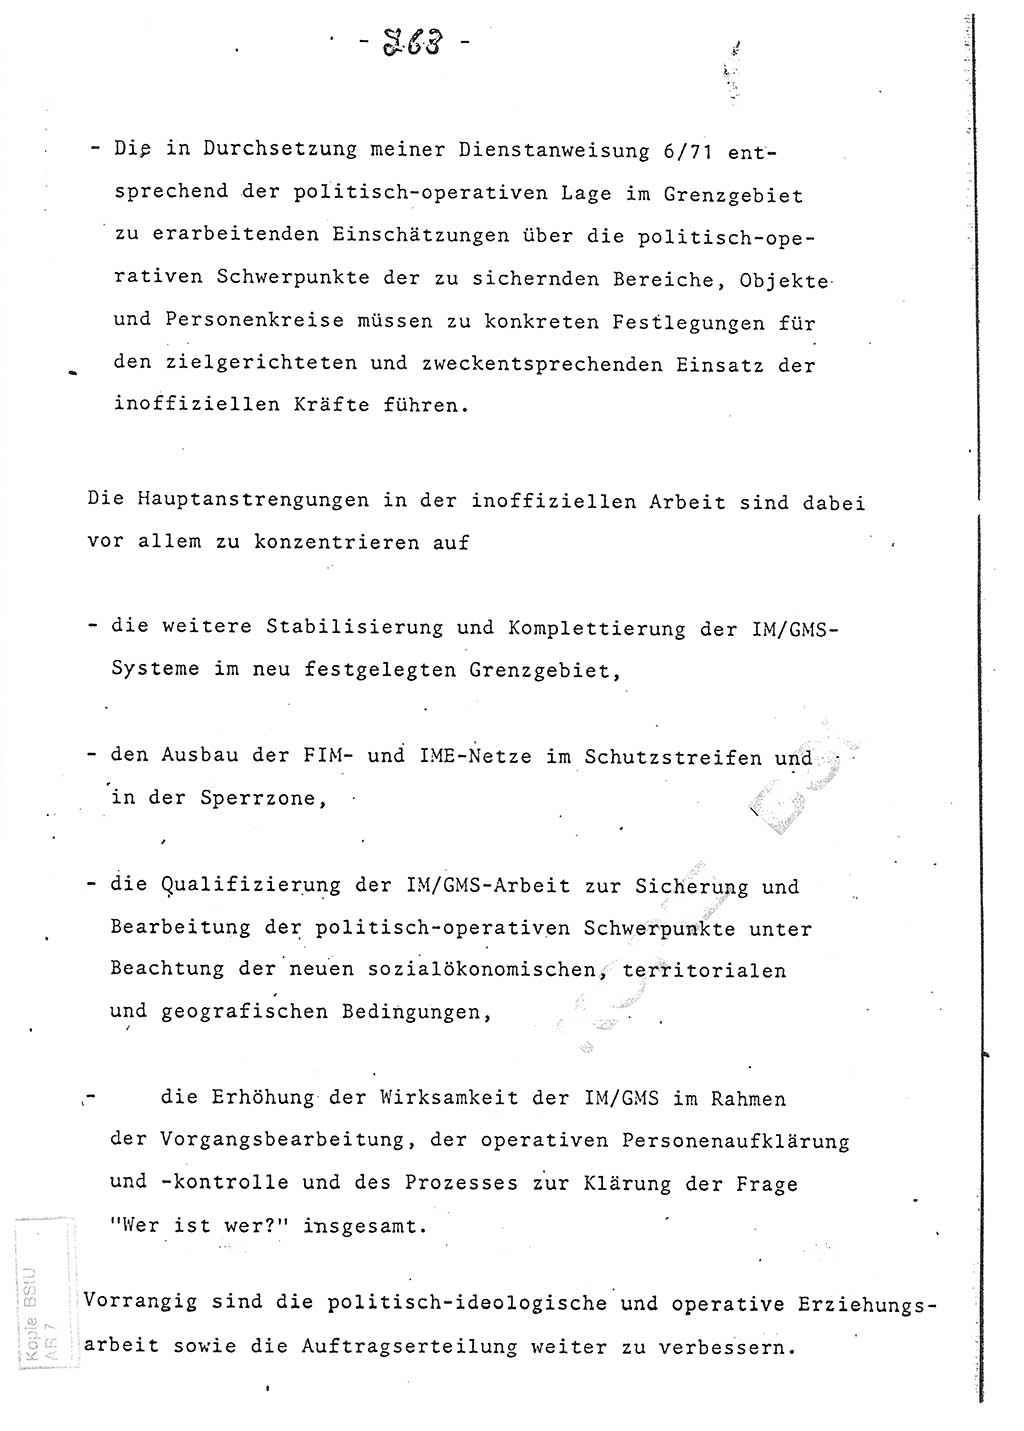 Referat (Entwurf) des Genossen Minister (Generaloberst Erich Mielke) auf der Dienstkonferenz 1972, Ministerium für Staatssicherheit (MfS) [Deutsche Demokratische Republik (DDR)], Der Minister, Geheime Verschlußsache (GVS) 008-150/72, Berlin 25.2.1972, Seite 263 (Ref. Entw. DK MfS DDR Min. GVS 008-150/72 1972, S. 263)